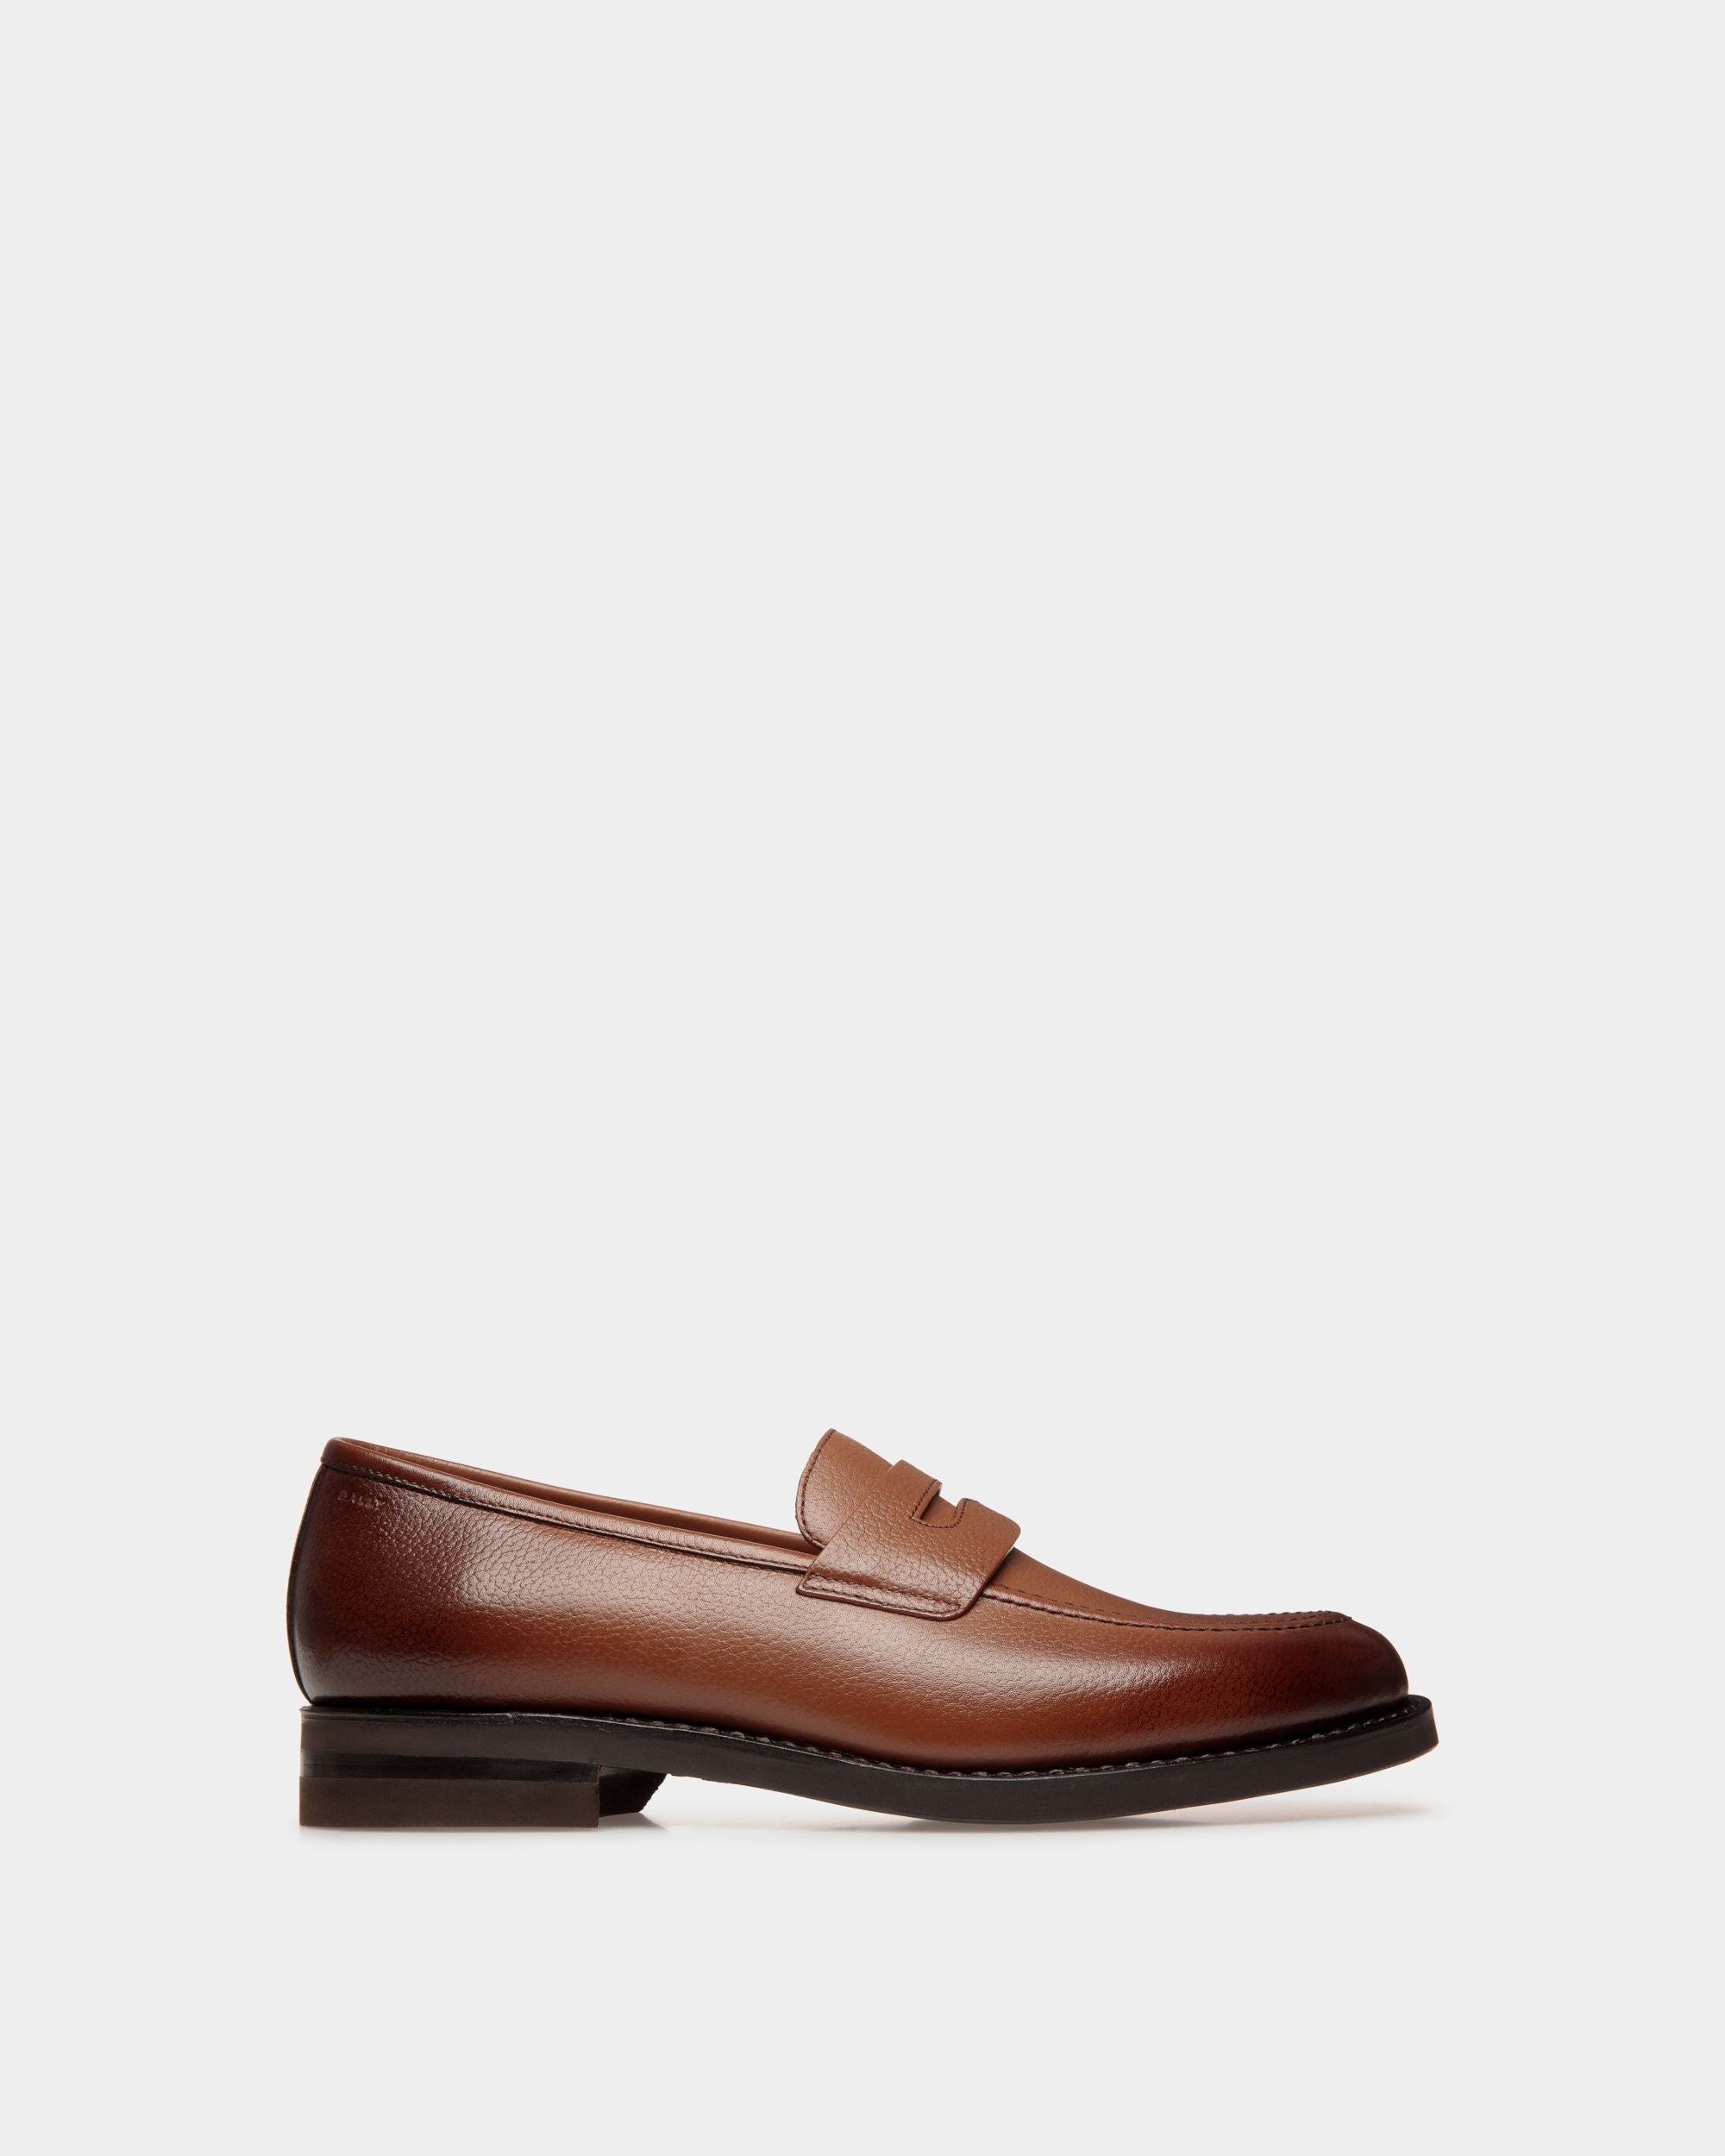 Schoenen | Loafer für Herren aus geprägtem Leder in Braun | Bally | Still Life Seite